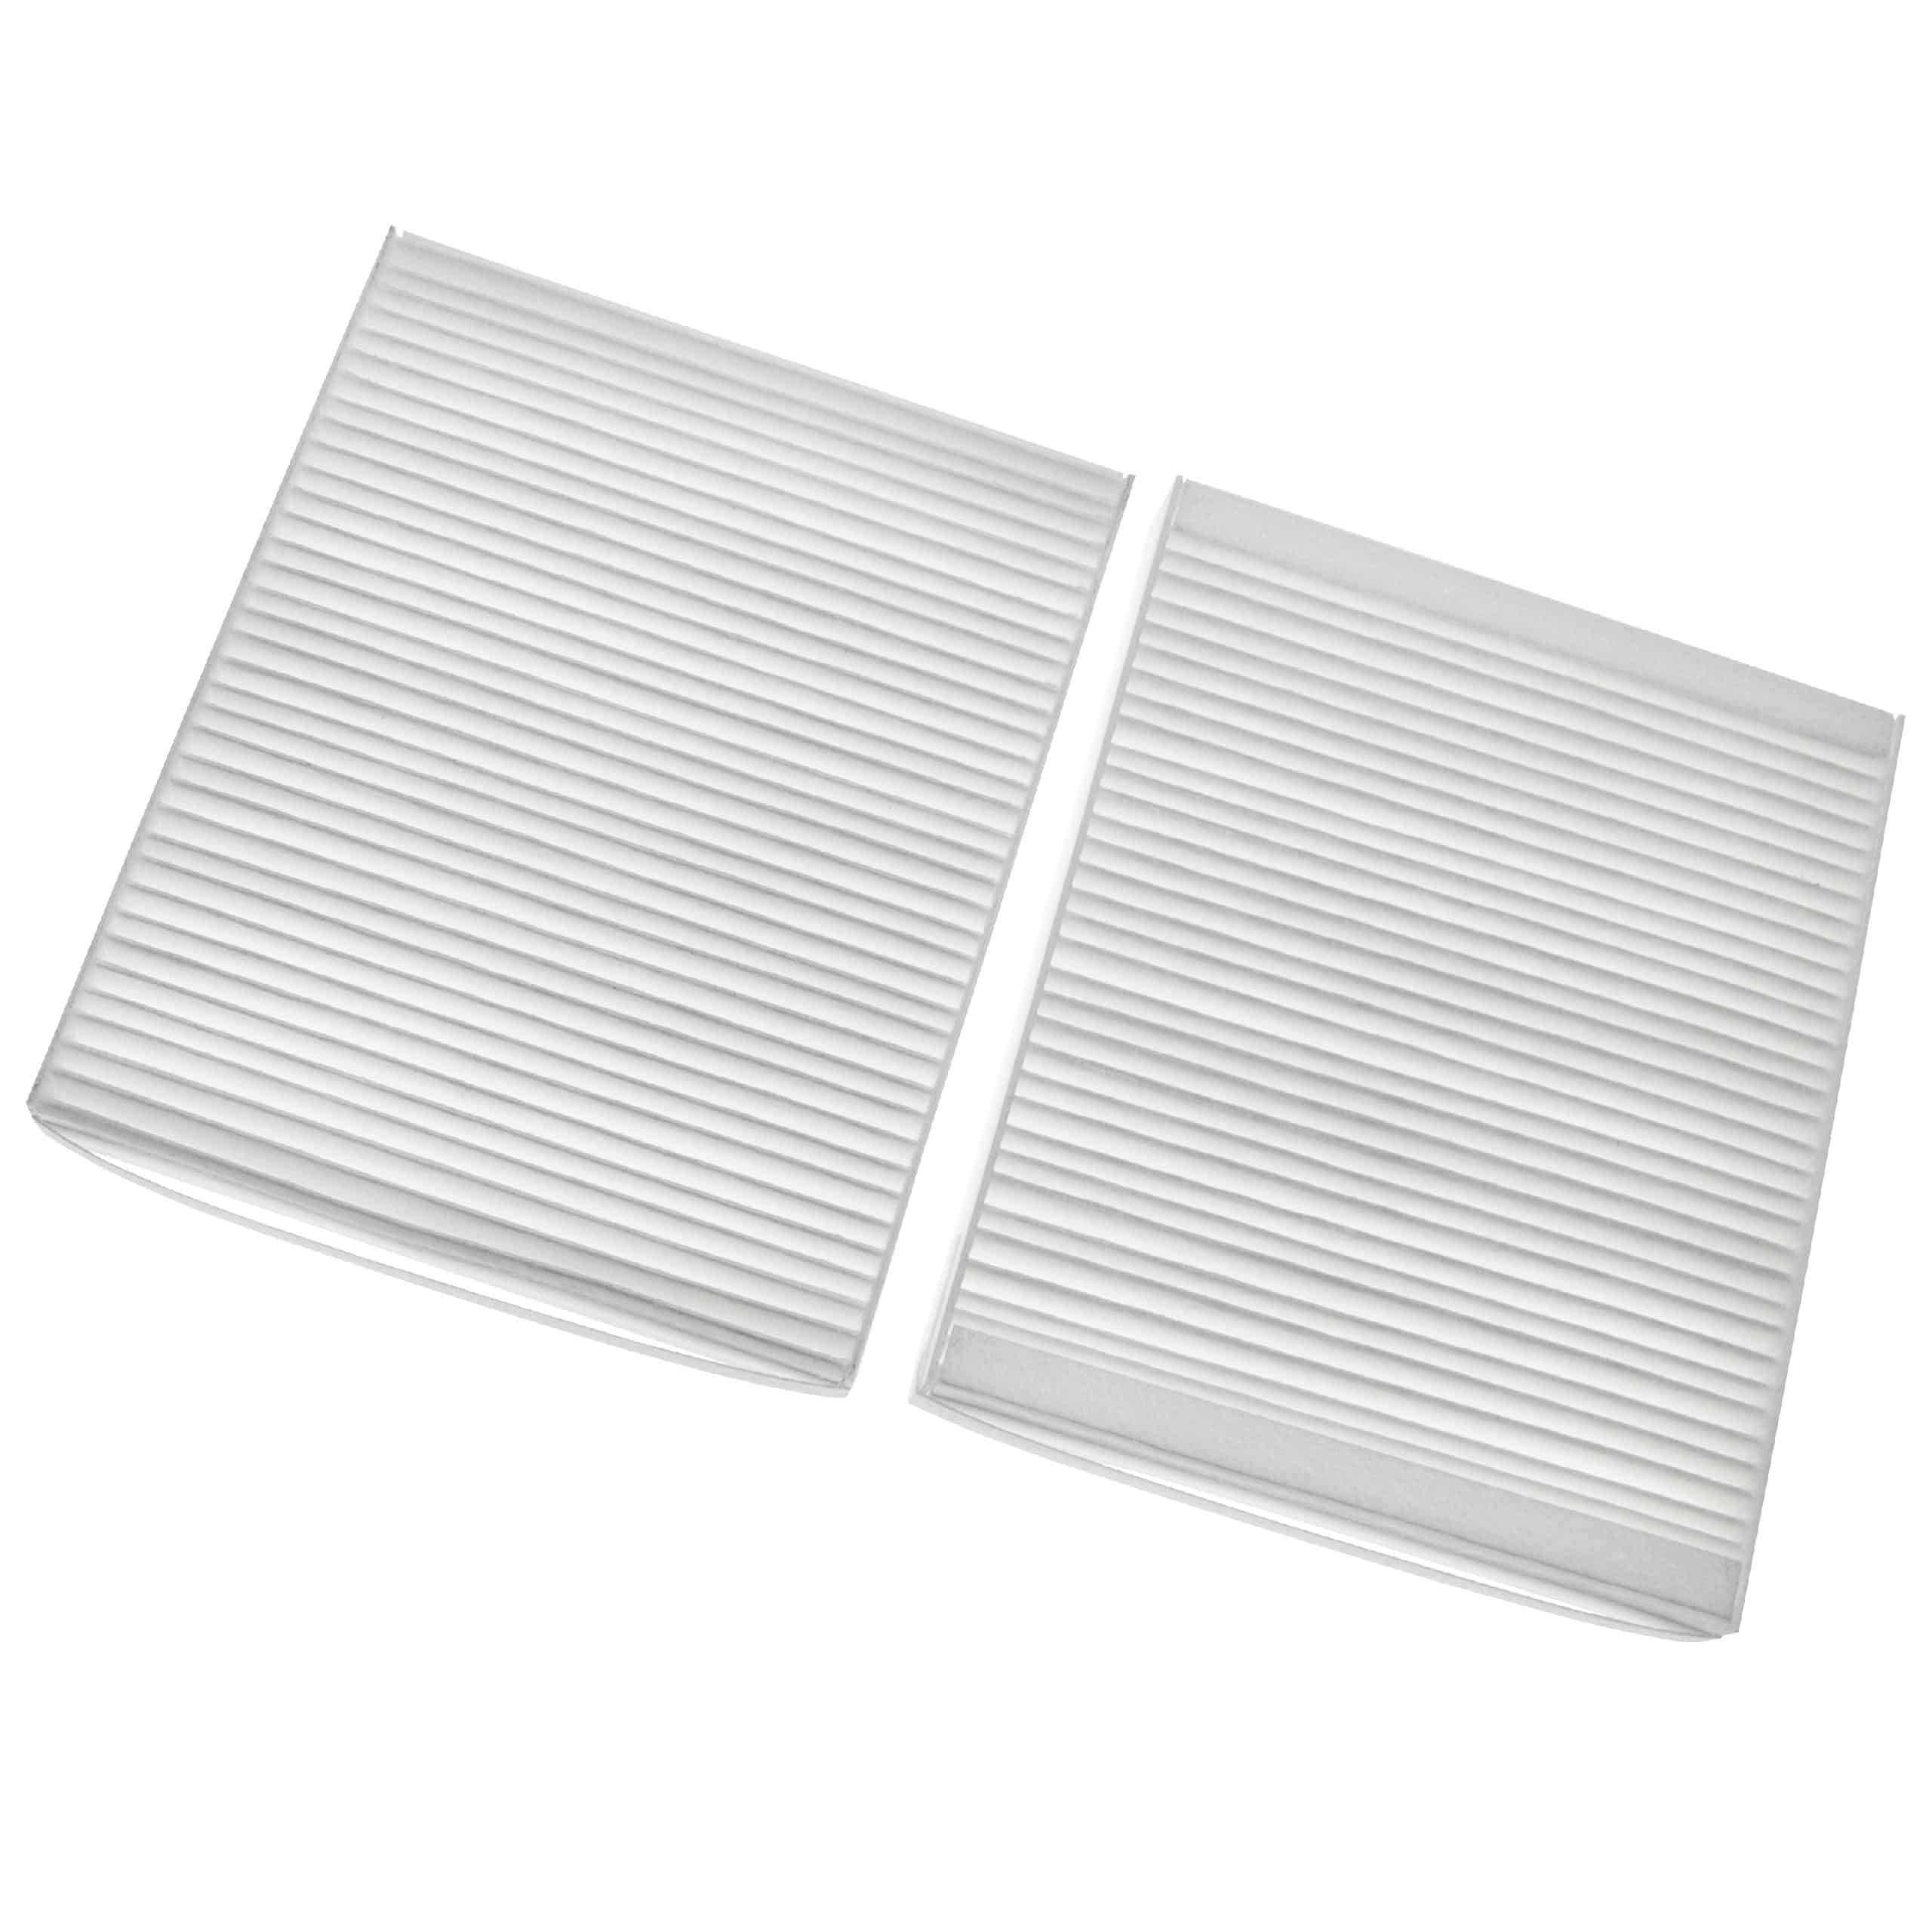 1x filtre d'échappement / 1x filtre à air d'entrée F7 remplace Lunos 040110, 040 110 pour ventilateur